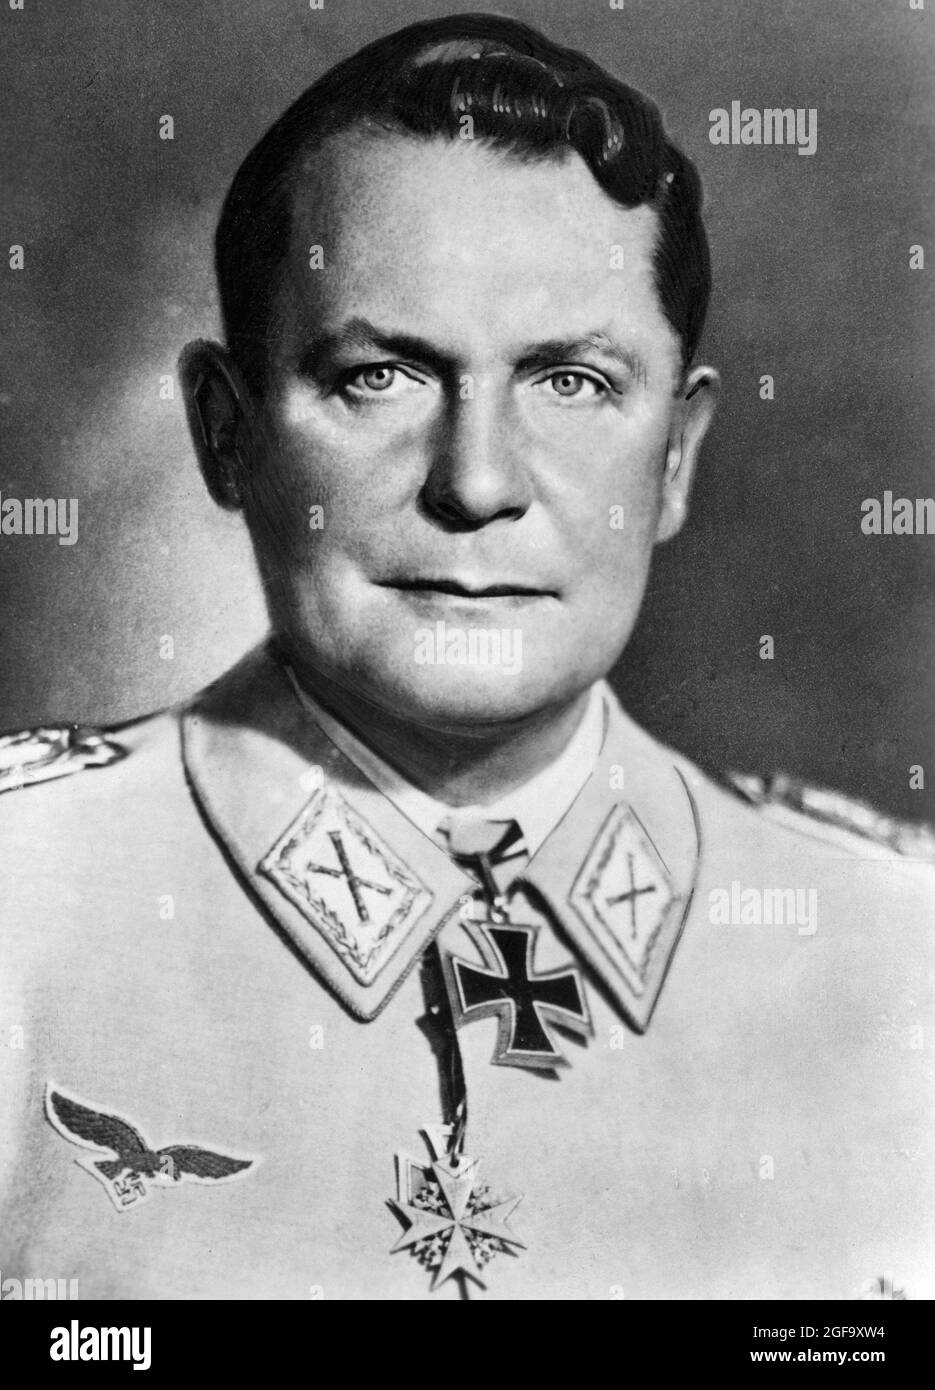 Ritratto del 1945 del capo nazista della Luftwaffe Germann Göring, catturato nel 1945, processato e condannato a morte a Norimberga nel 1946. Ha commesso ore di suicidio prima di essere impiccato. Foto Stock